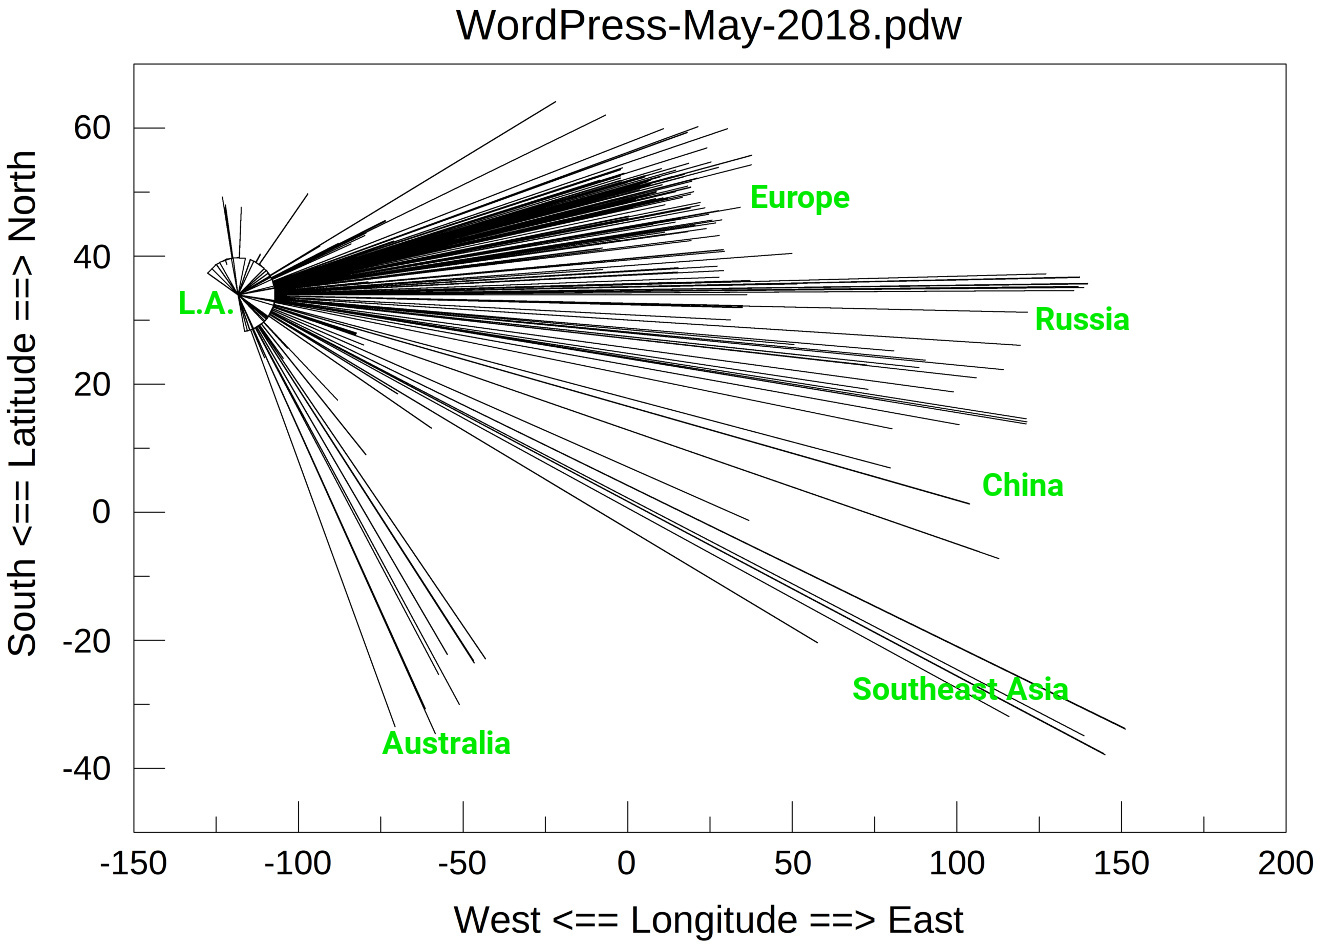 Vestor diagram of WordPress attacker locations